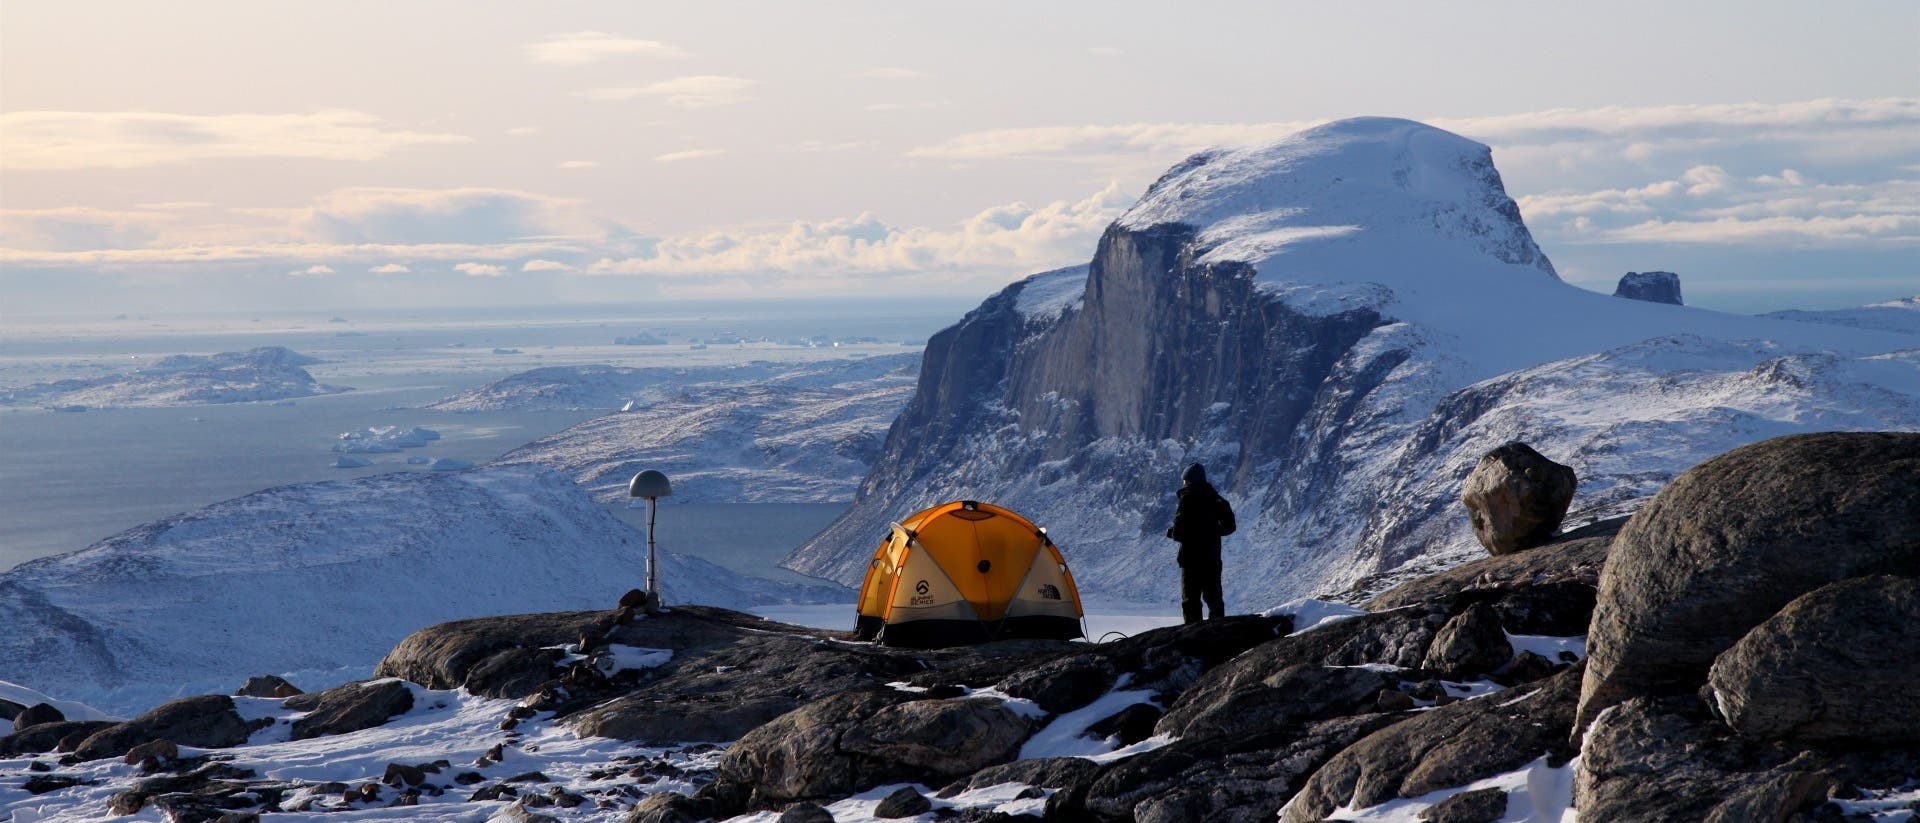 Ein in Schwarz gekleideter Forscher steht neben einem gelben Kuppelzelt und einer Messstation auf einem Berg nahe der Küste Grönlands. Die Landschaft ist mit Schnee und Eis bedeckt